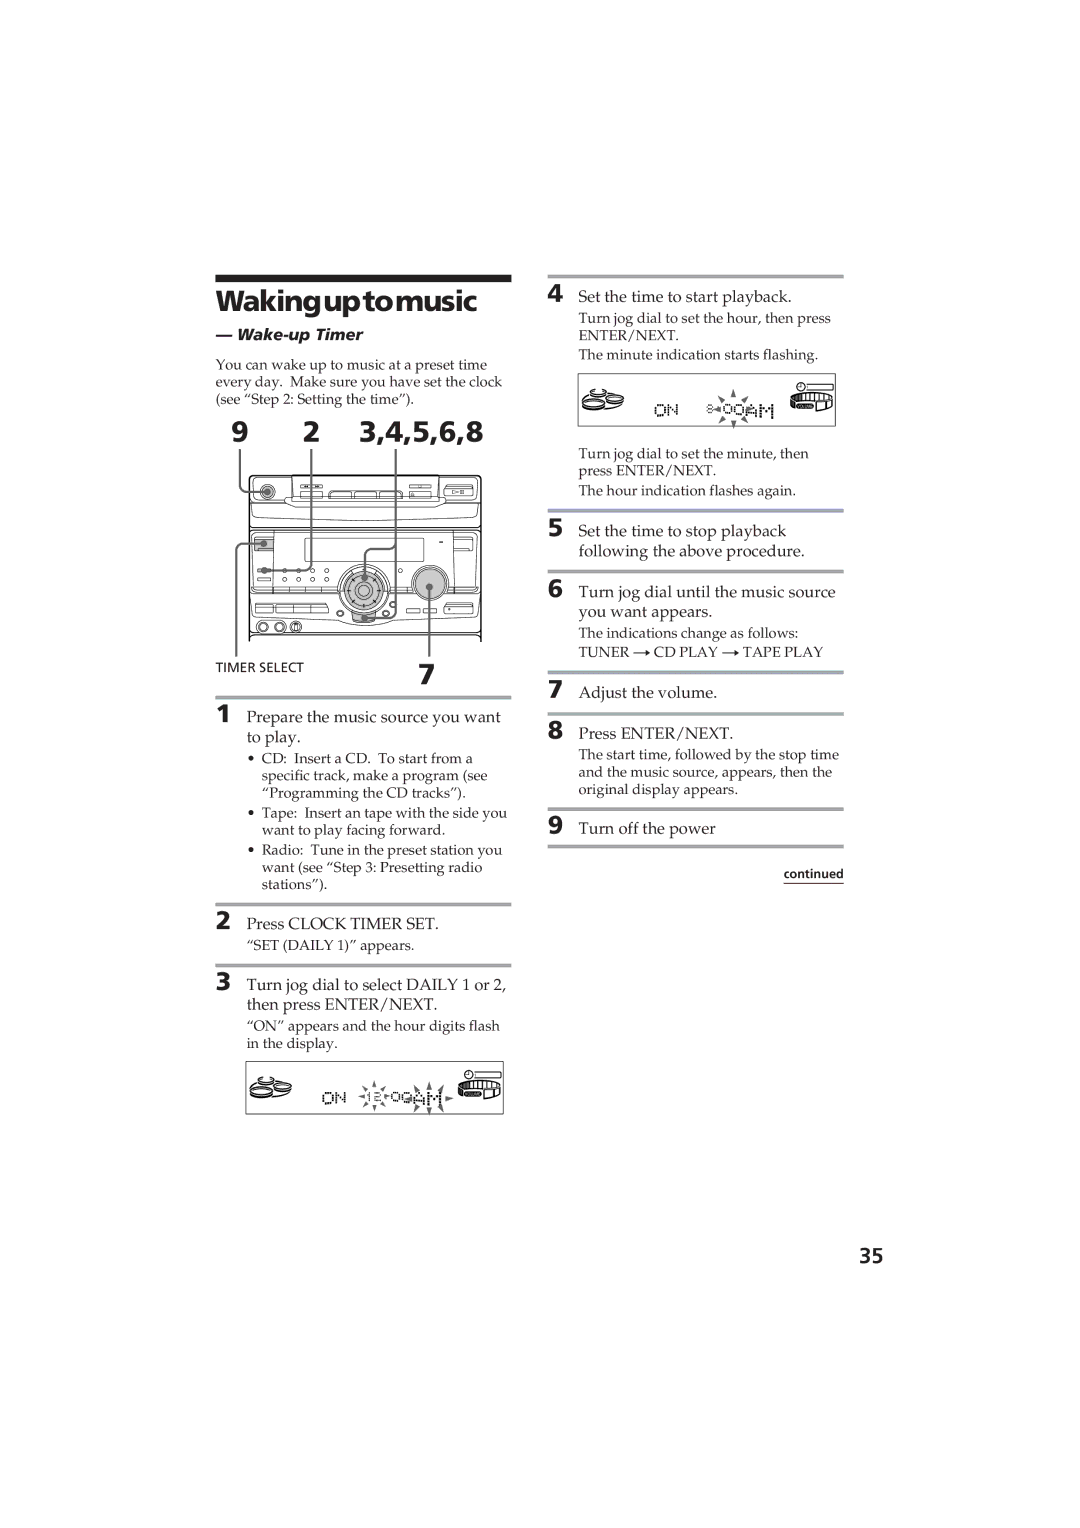 Sony MHC-D60 manual Wakinguptomusic, 3,4,5,6,8, Wake-up Timer 